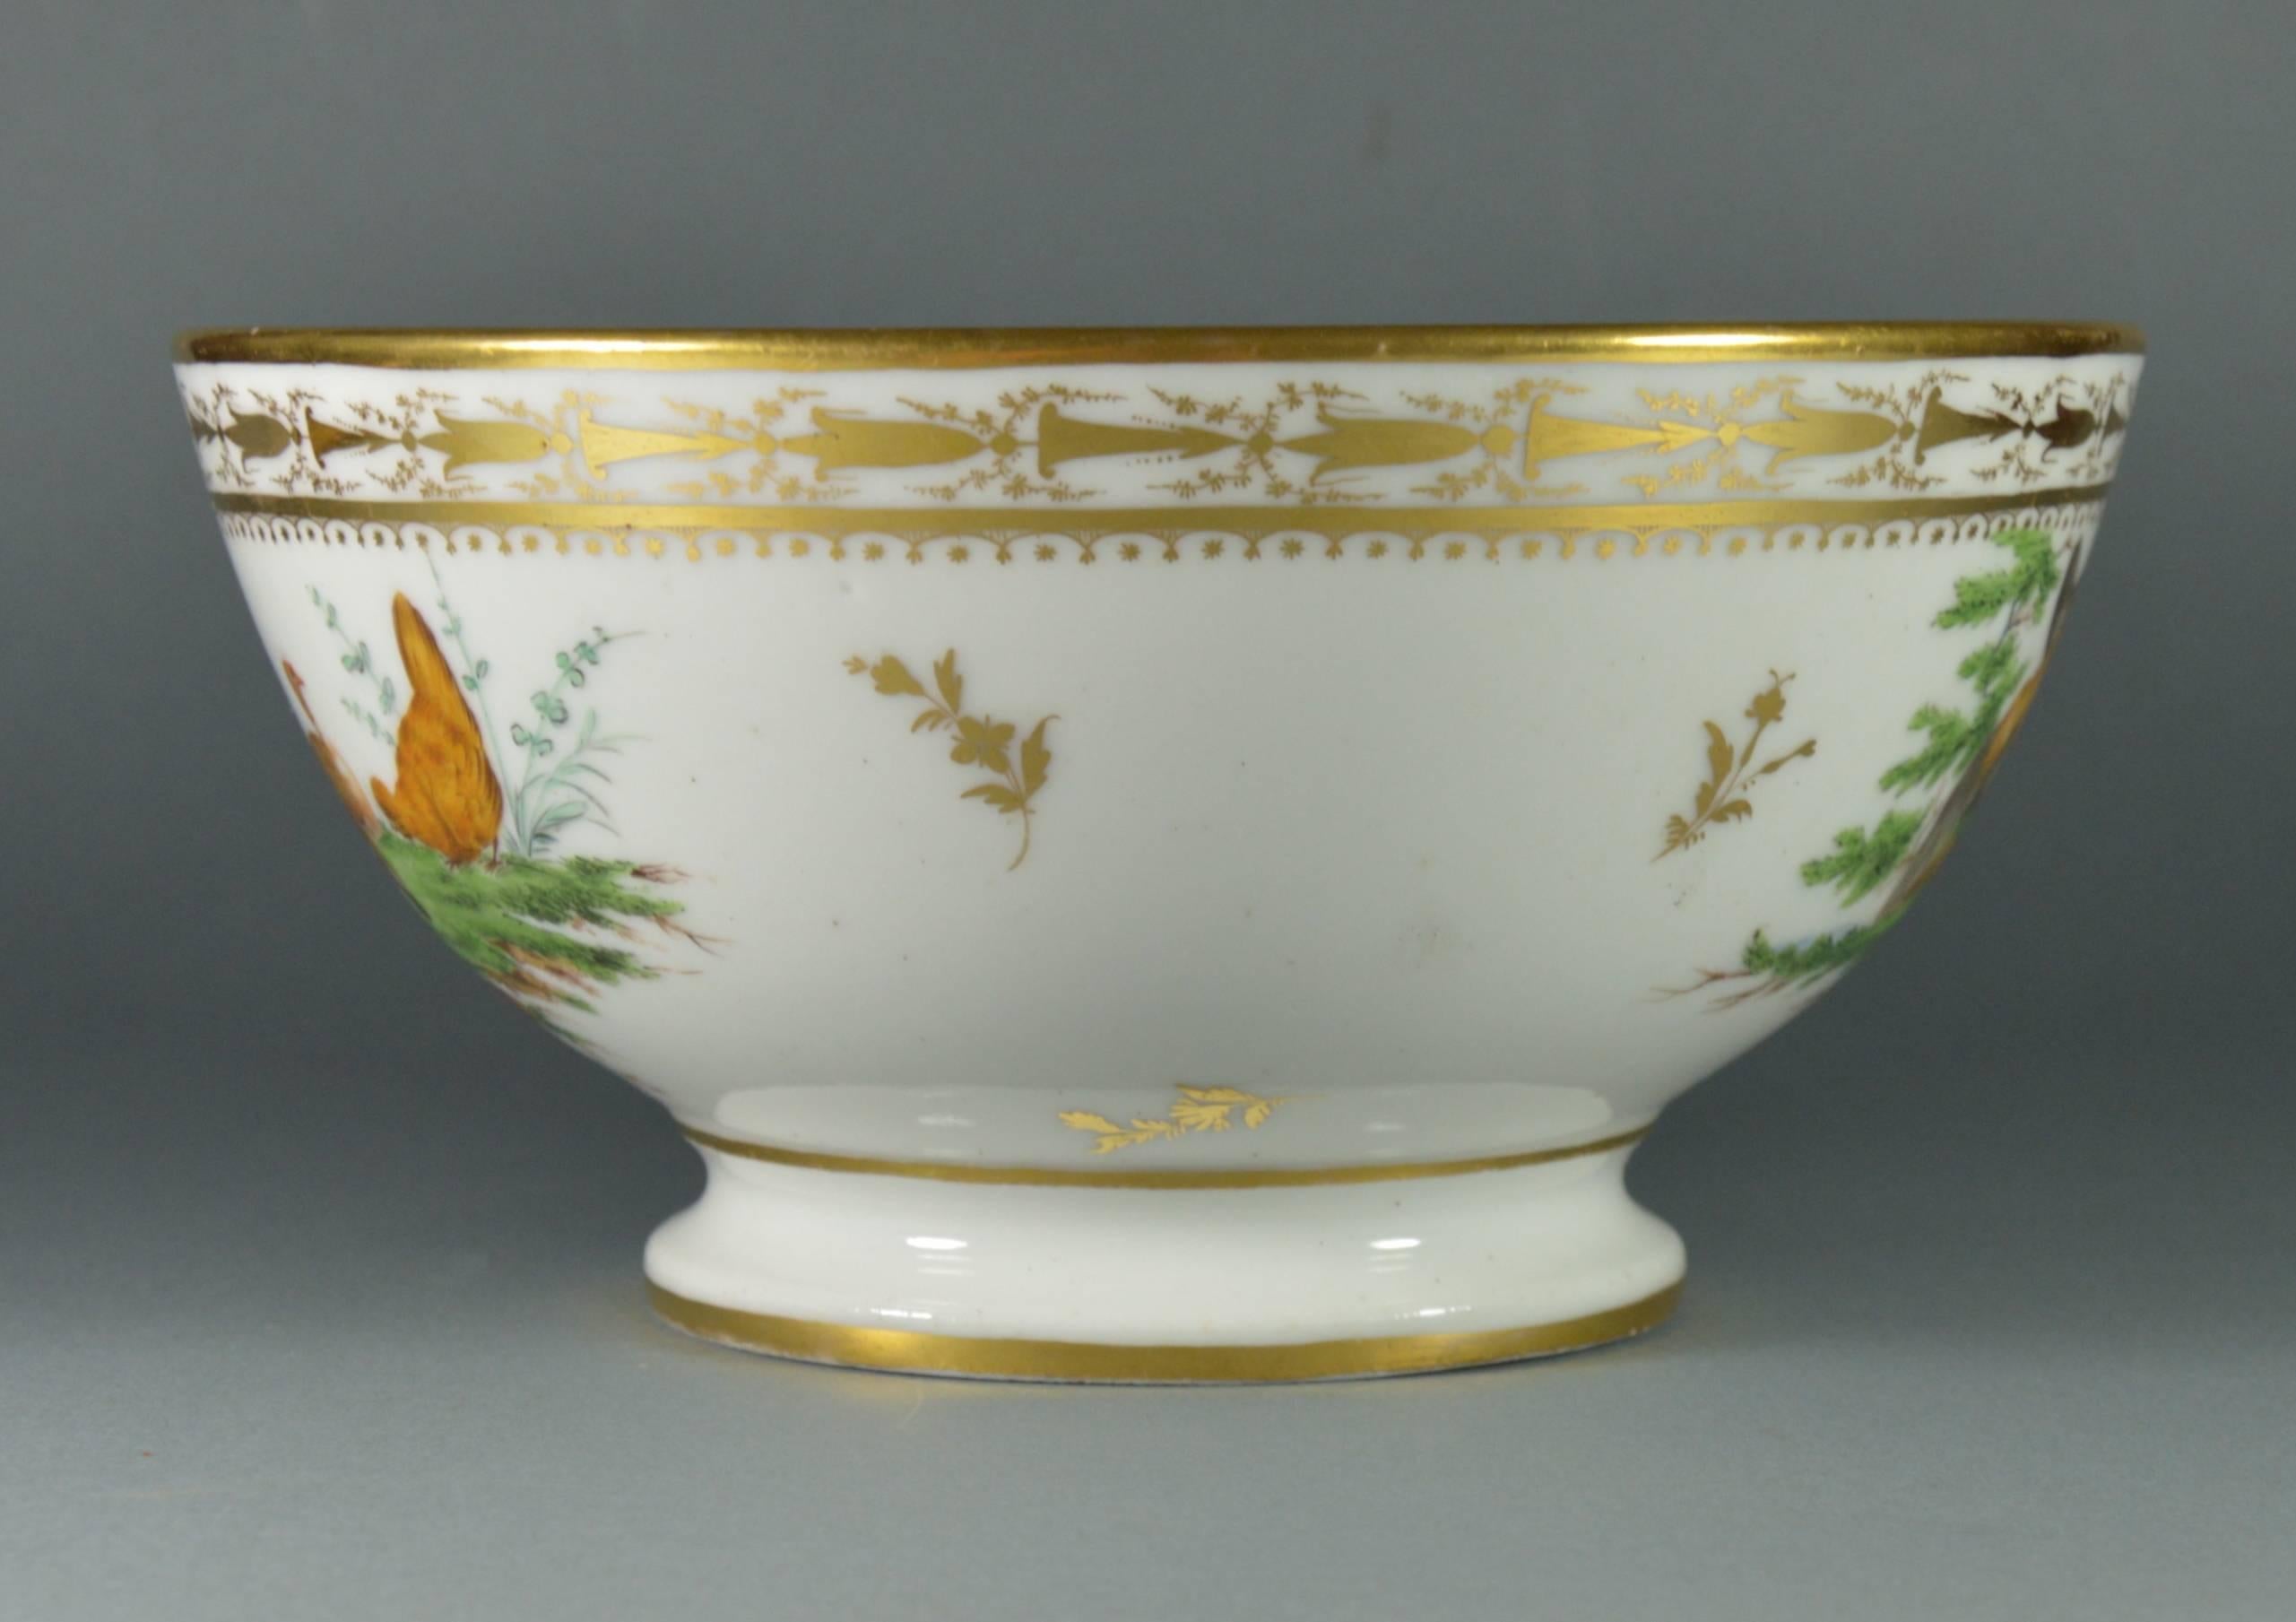 Belgian Old Brussels Porcelain Slop Bowl by Louis Cretté Manufacture, 19th Century For Sale